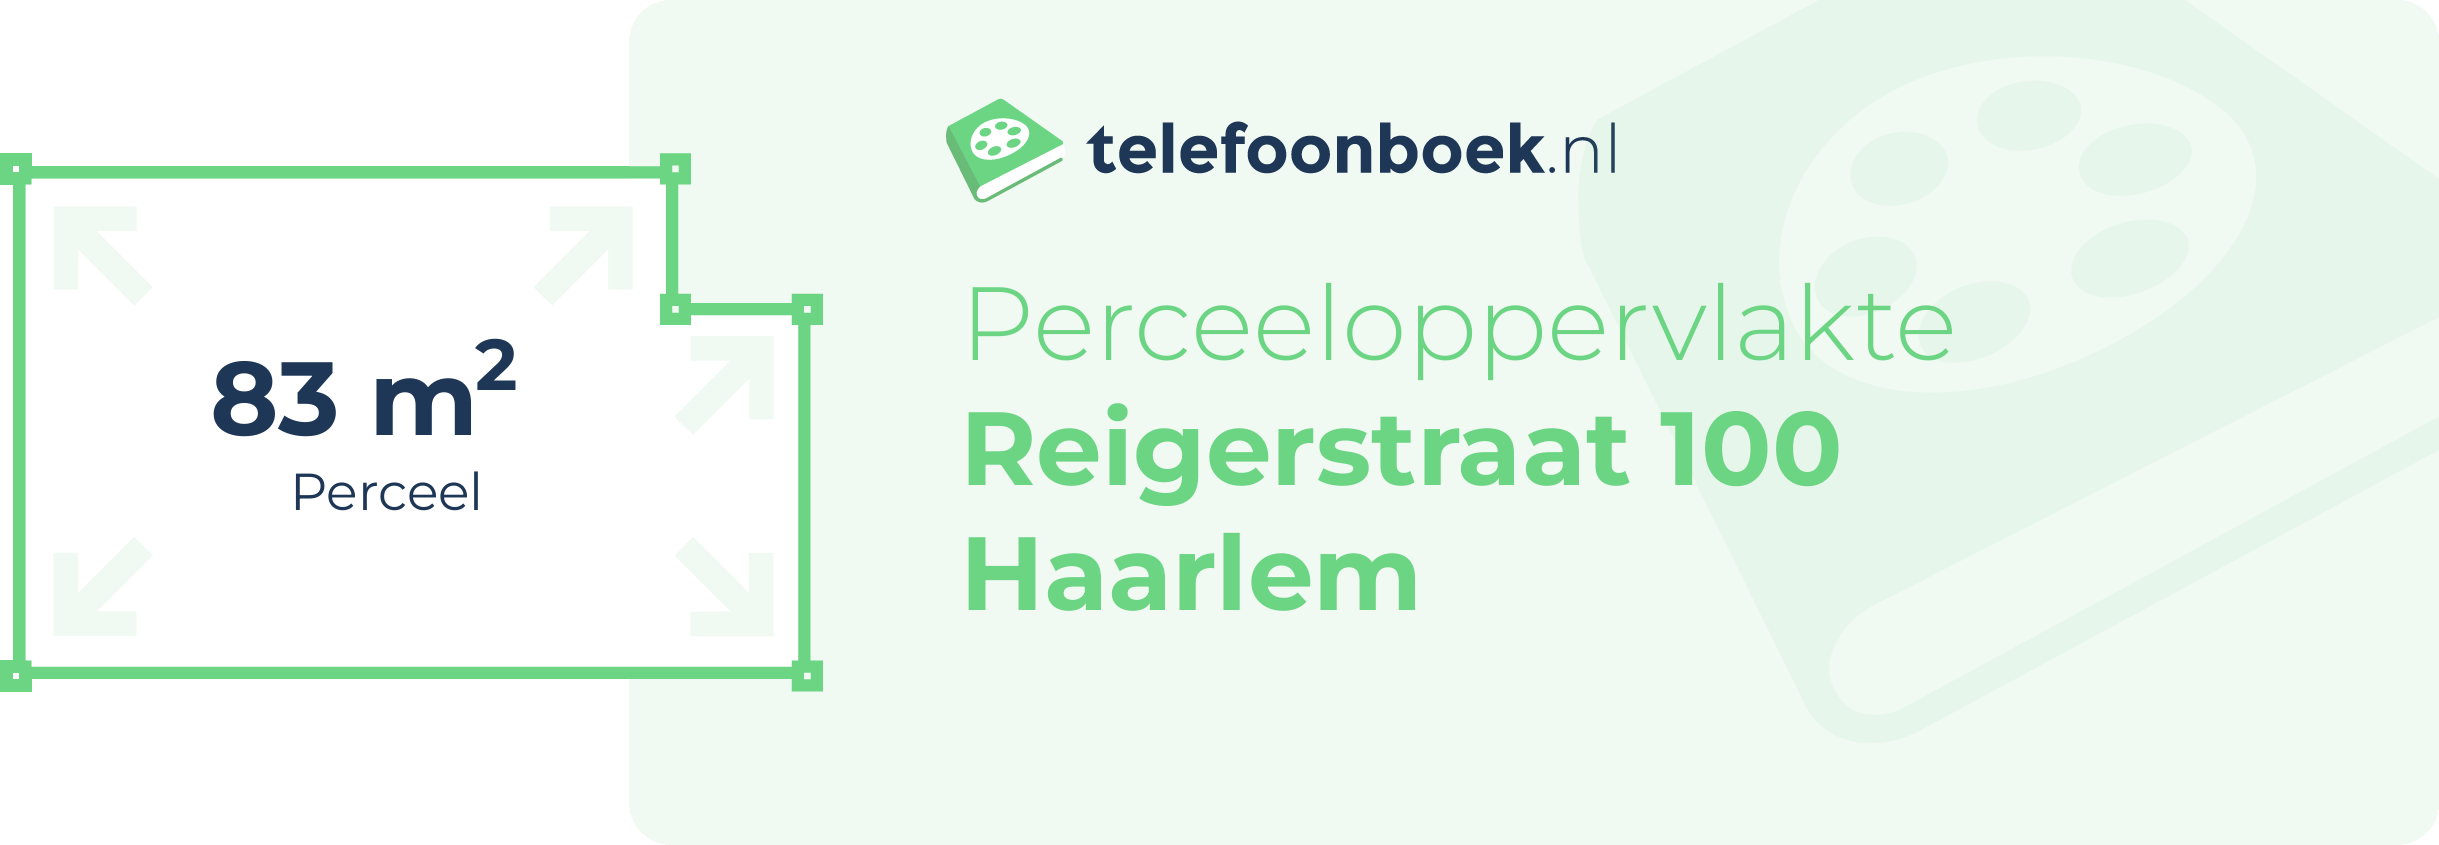 Perceeloppervlakte Reigerstraat 100 Haarlem